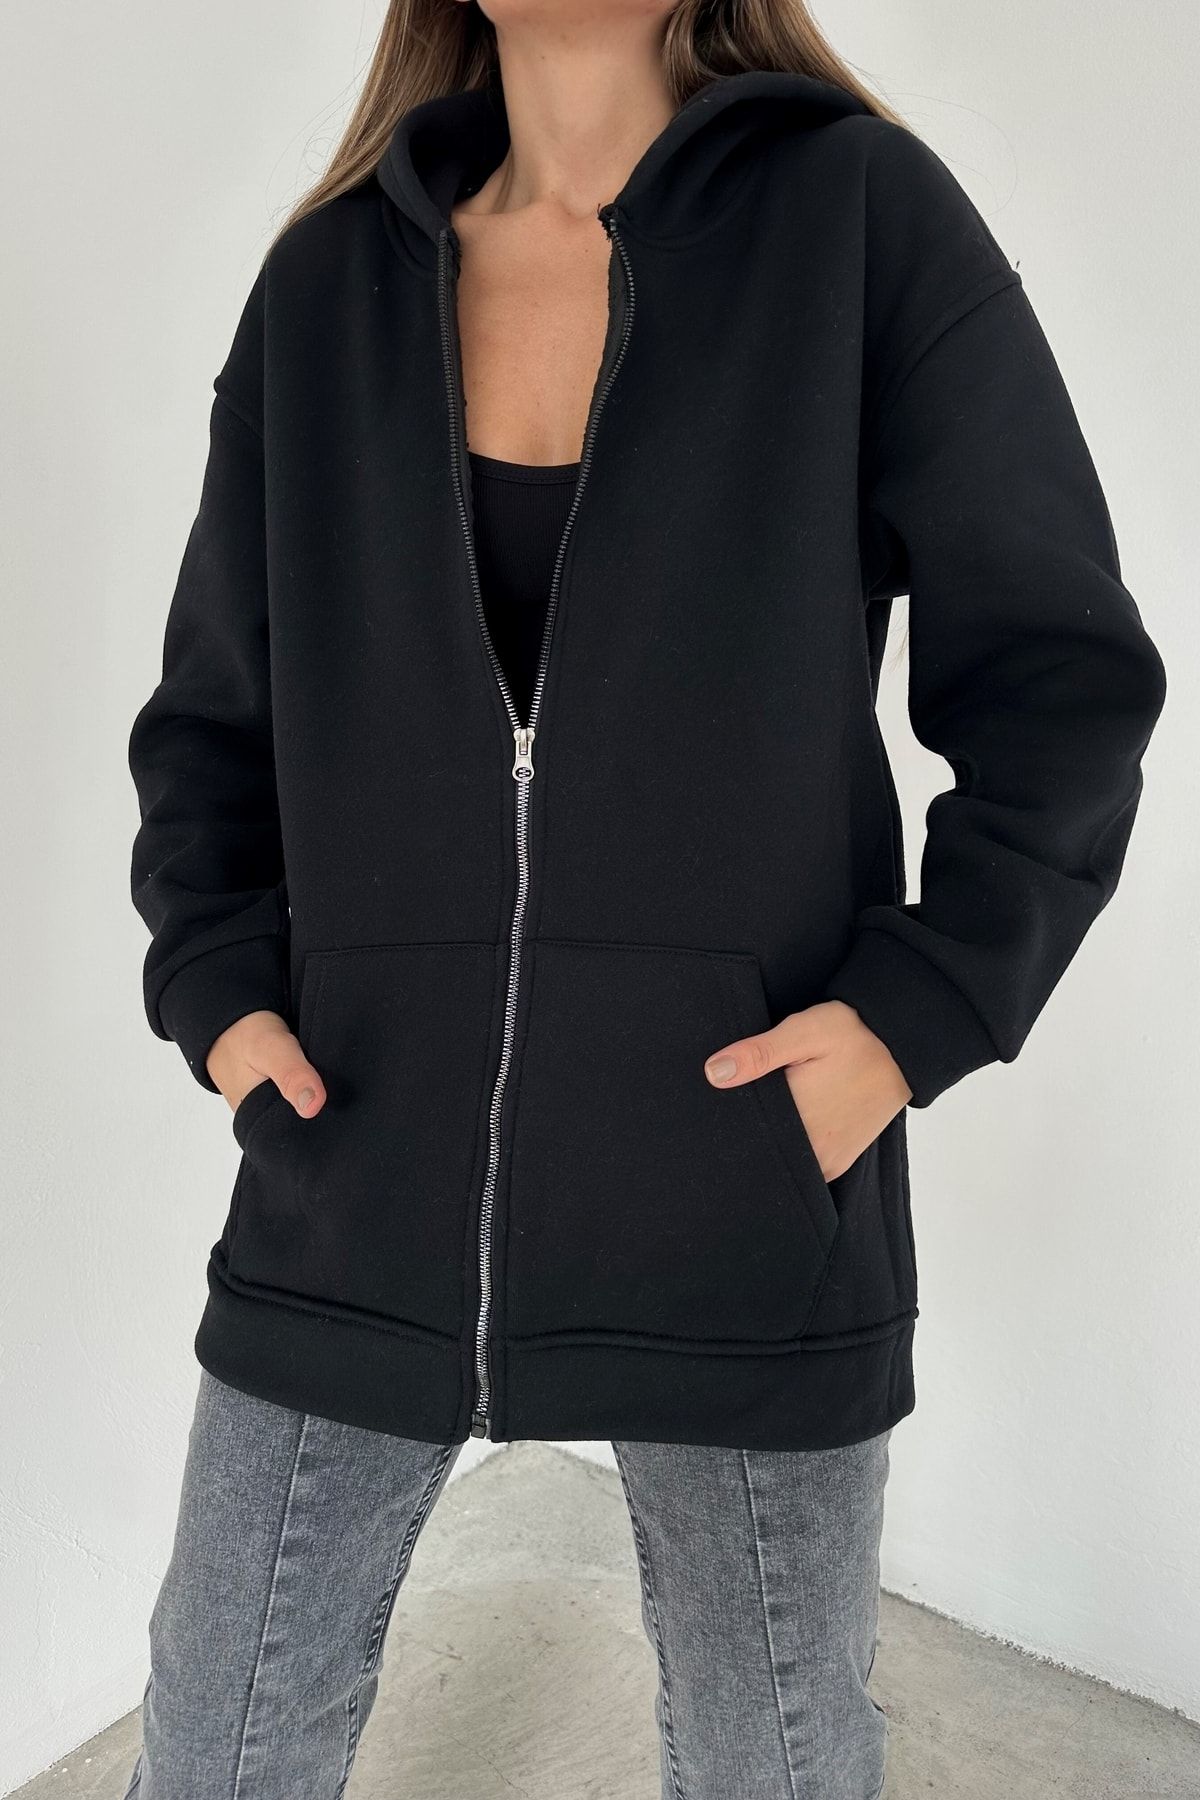 Eka Kadın Siyah Fermuarlı Kapişonlu Oversize Sweatshirt 1009-3002